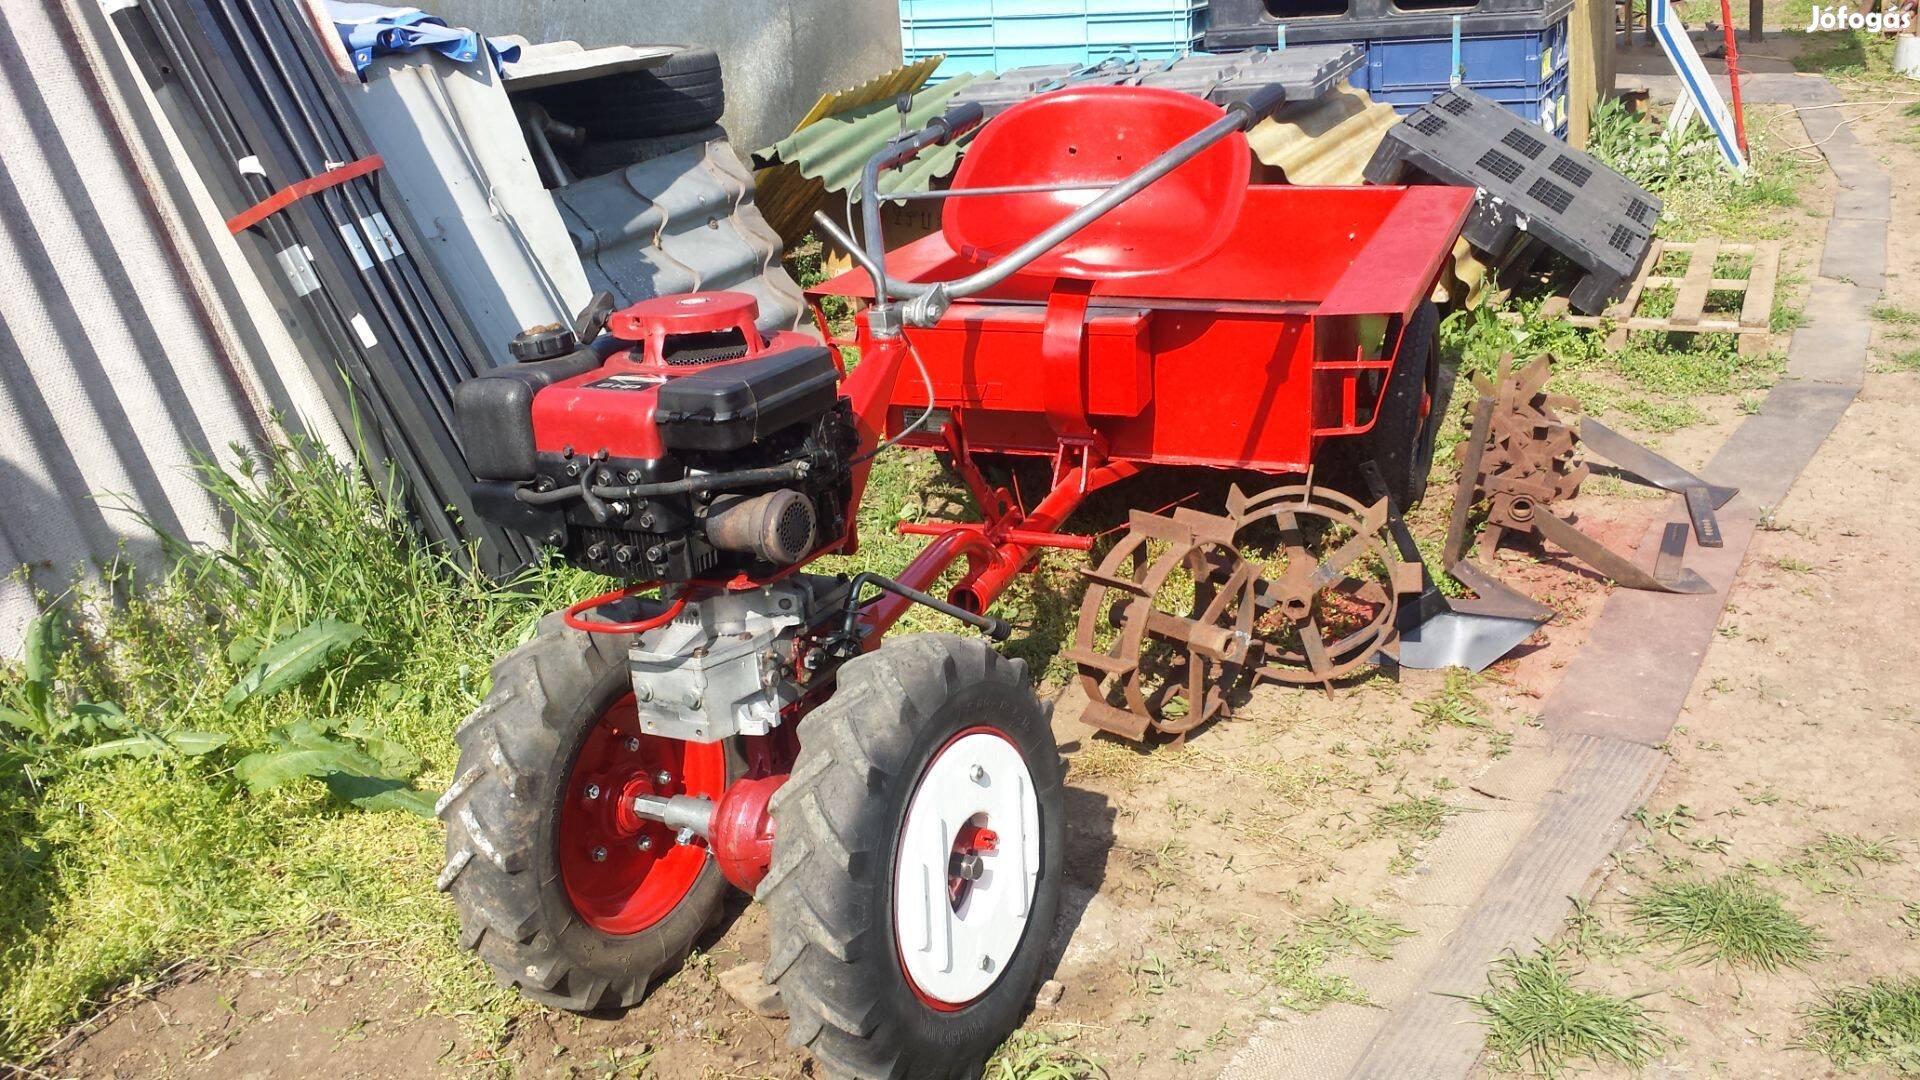 Robi Rekord 250 kerti traktor kistraktor pótkocsi munkaeszközökkel